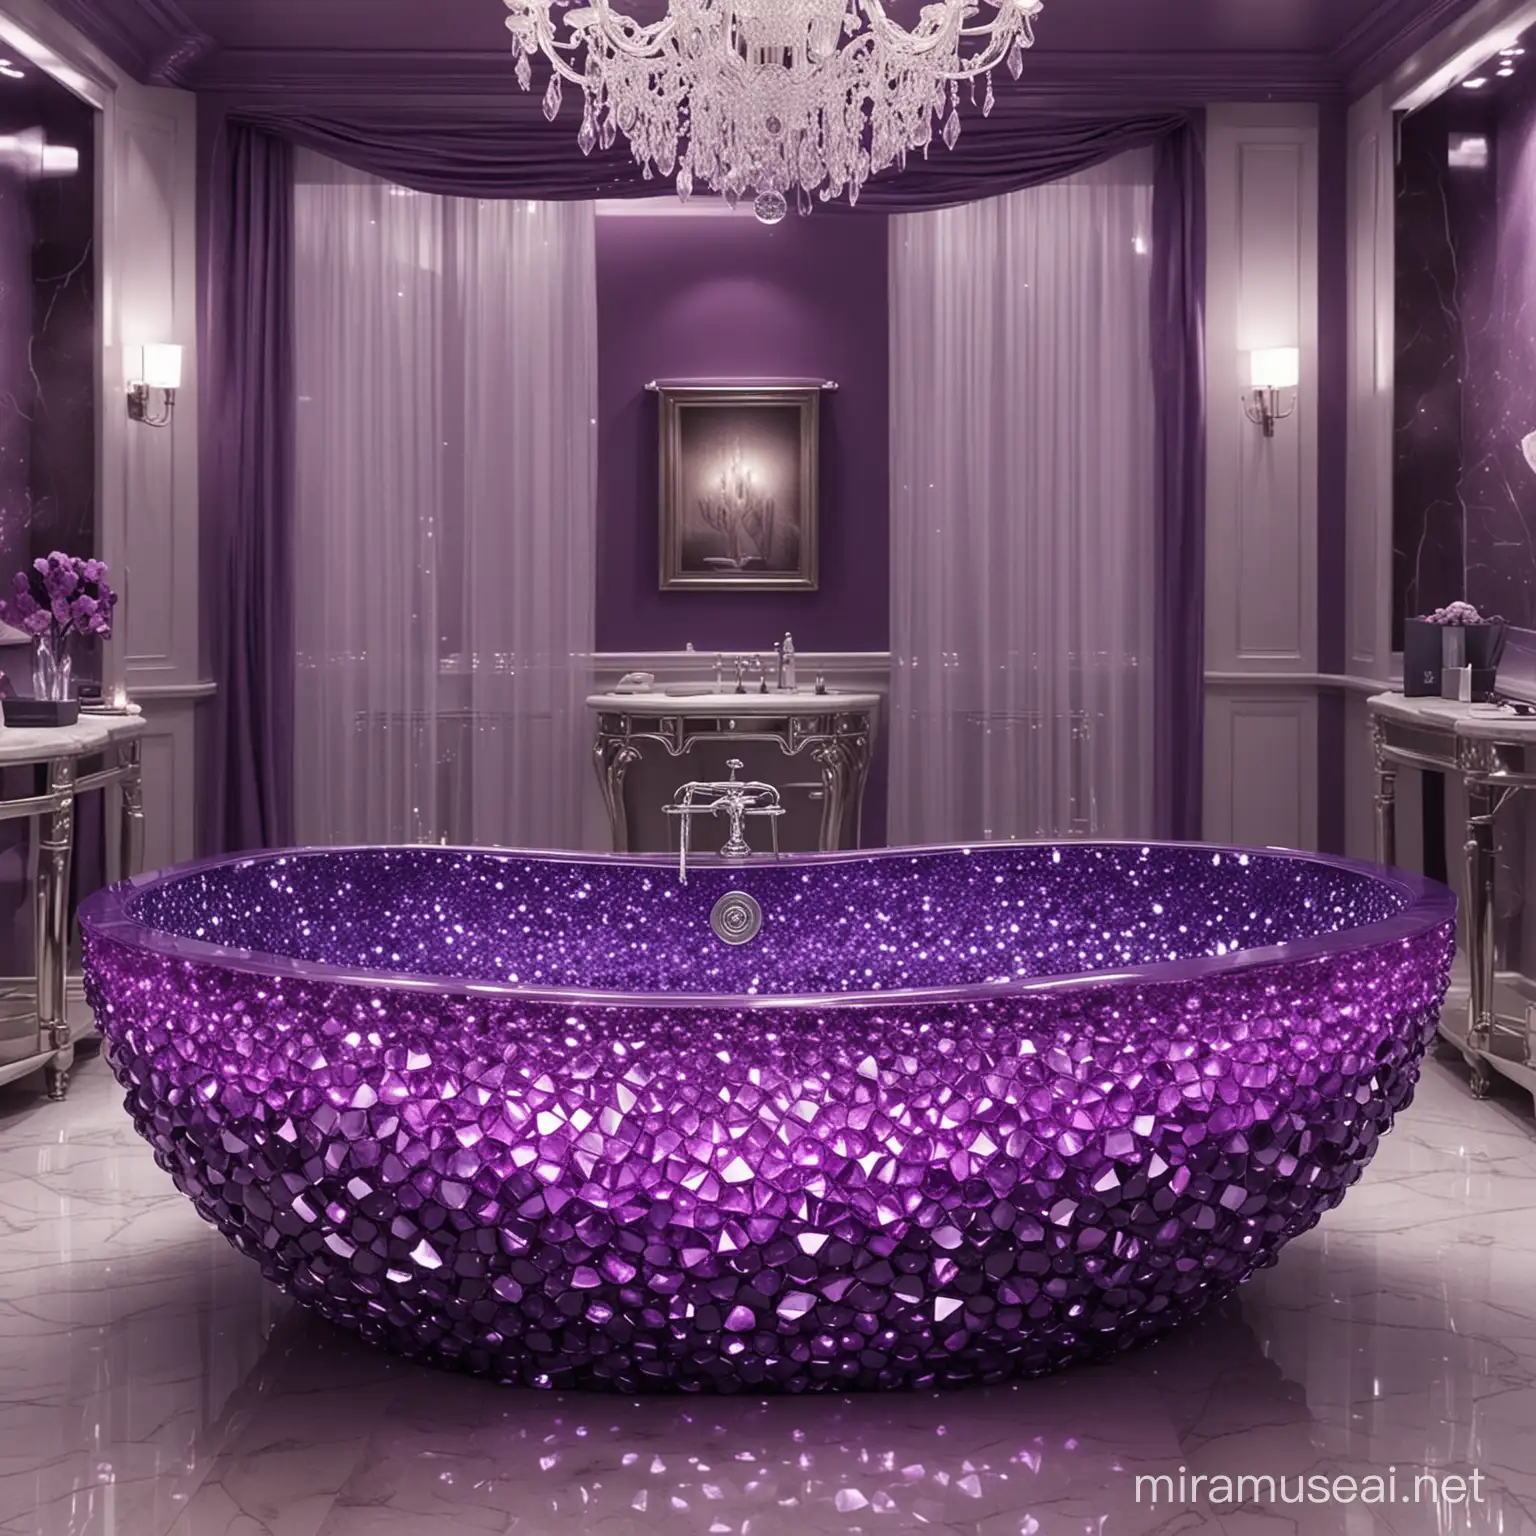 Crea maestoso bagno con cristalli viola, in mezzo alla stanza c’è una vasca fatta interamente di gemme viola luminose, realistica